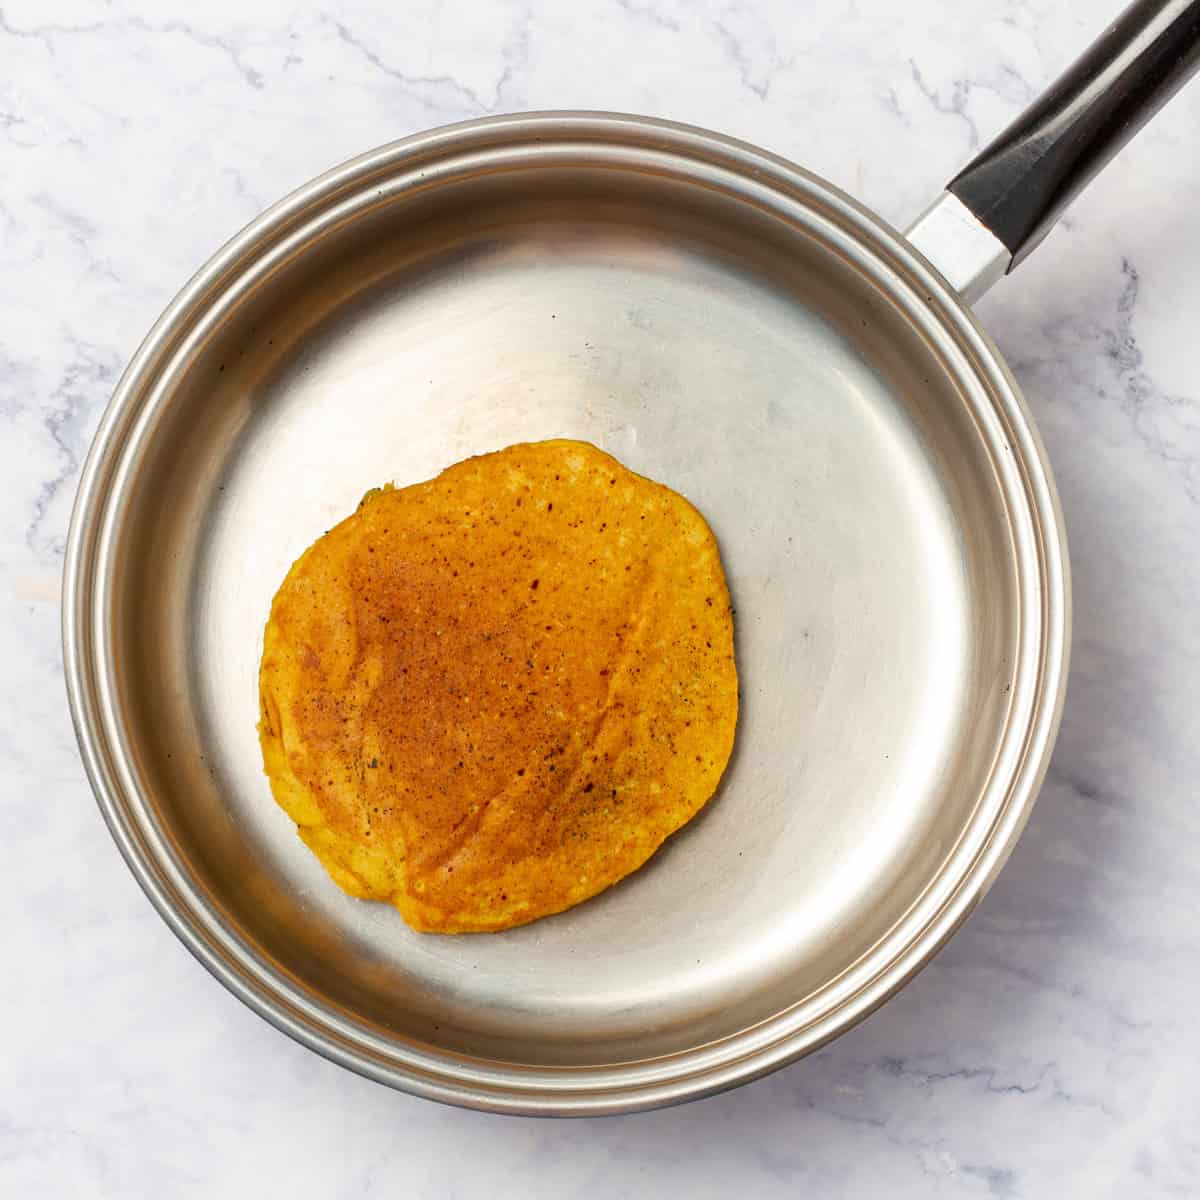 Pumpkin Pancake cooking in frying pan